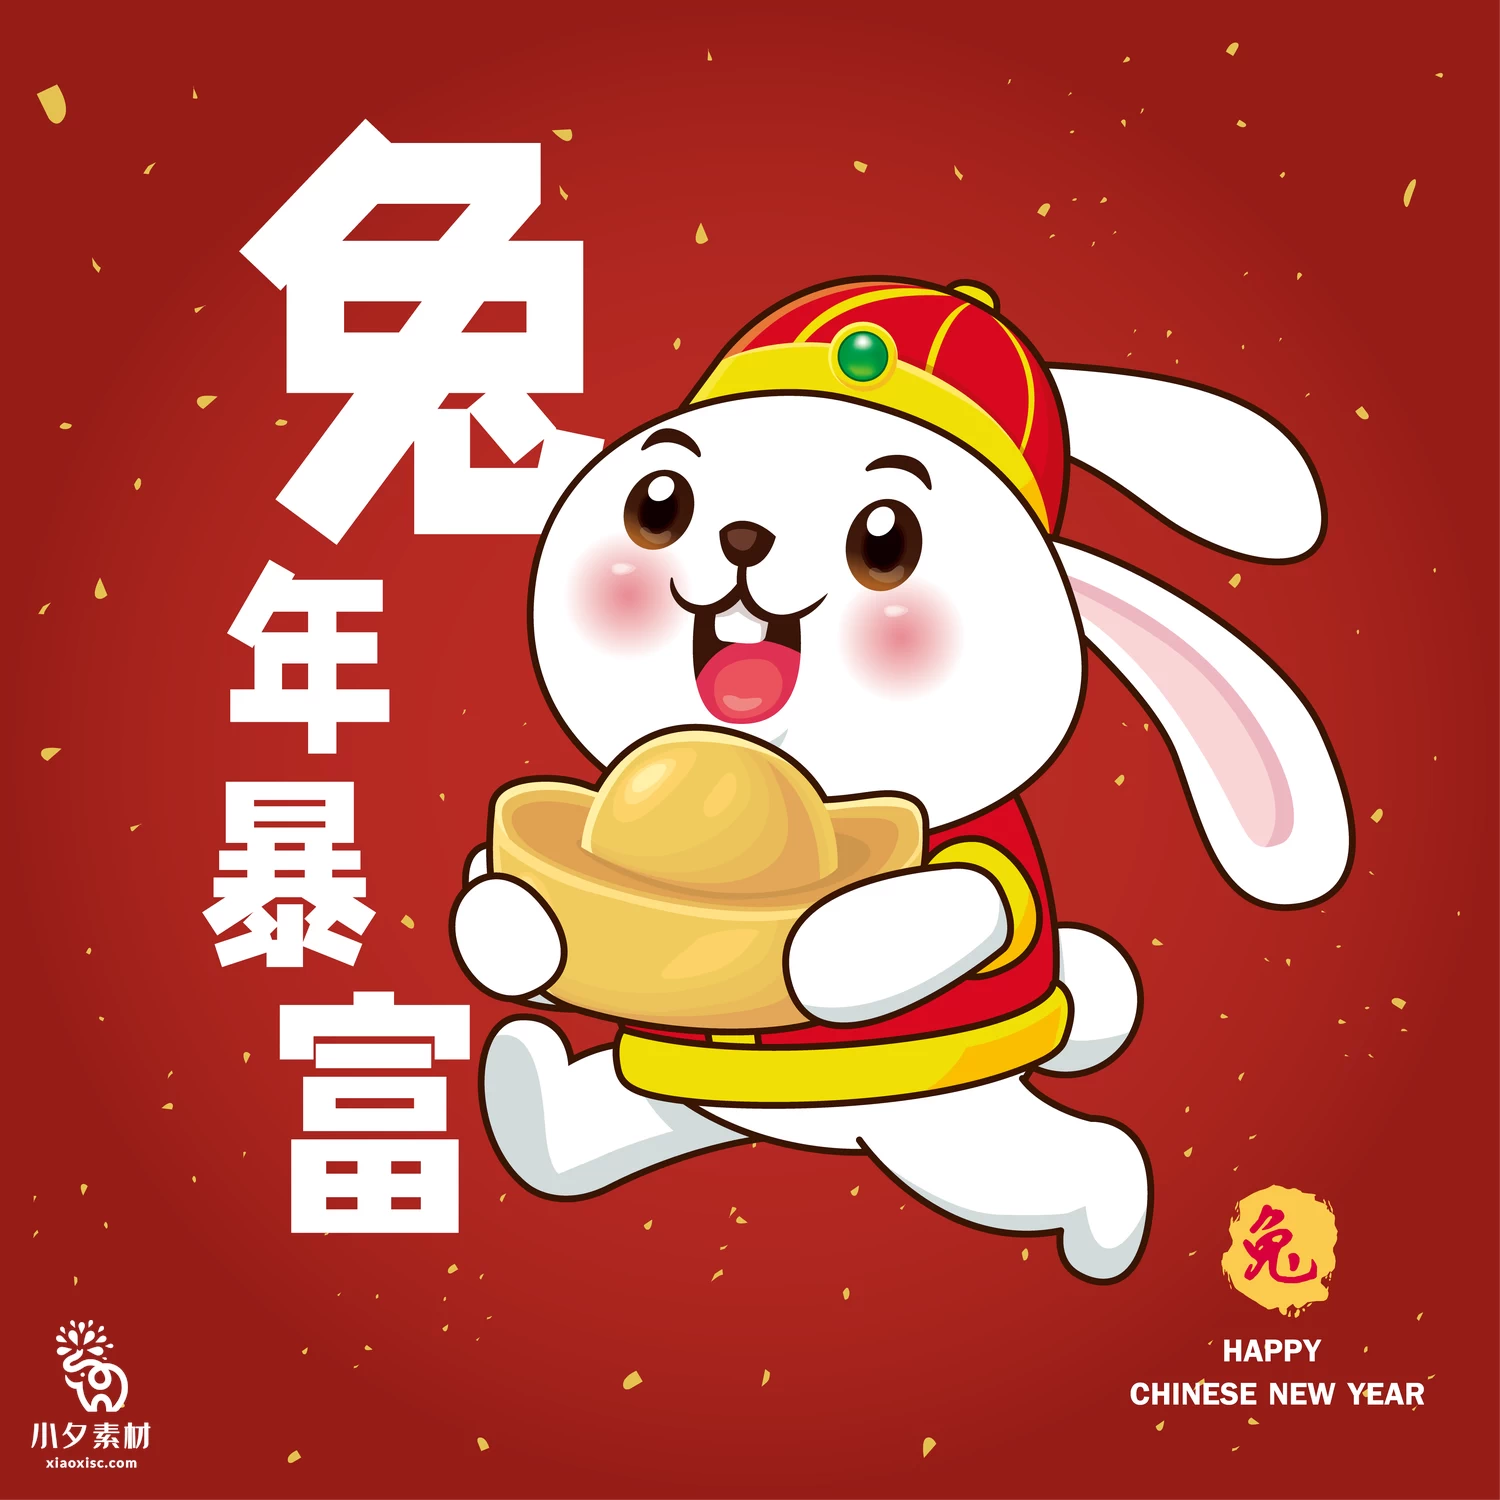 2023年兔年恭贺新春新年快乐喜庆节日宣传海报图片AI矢量设计素材【026】